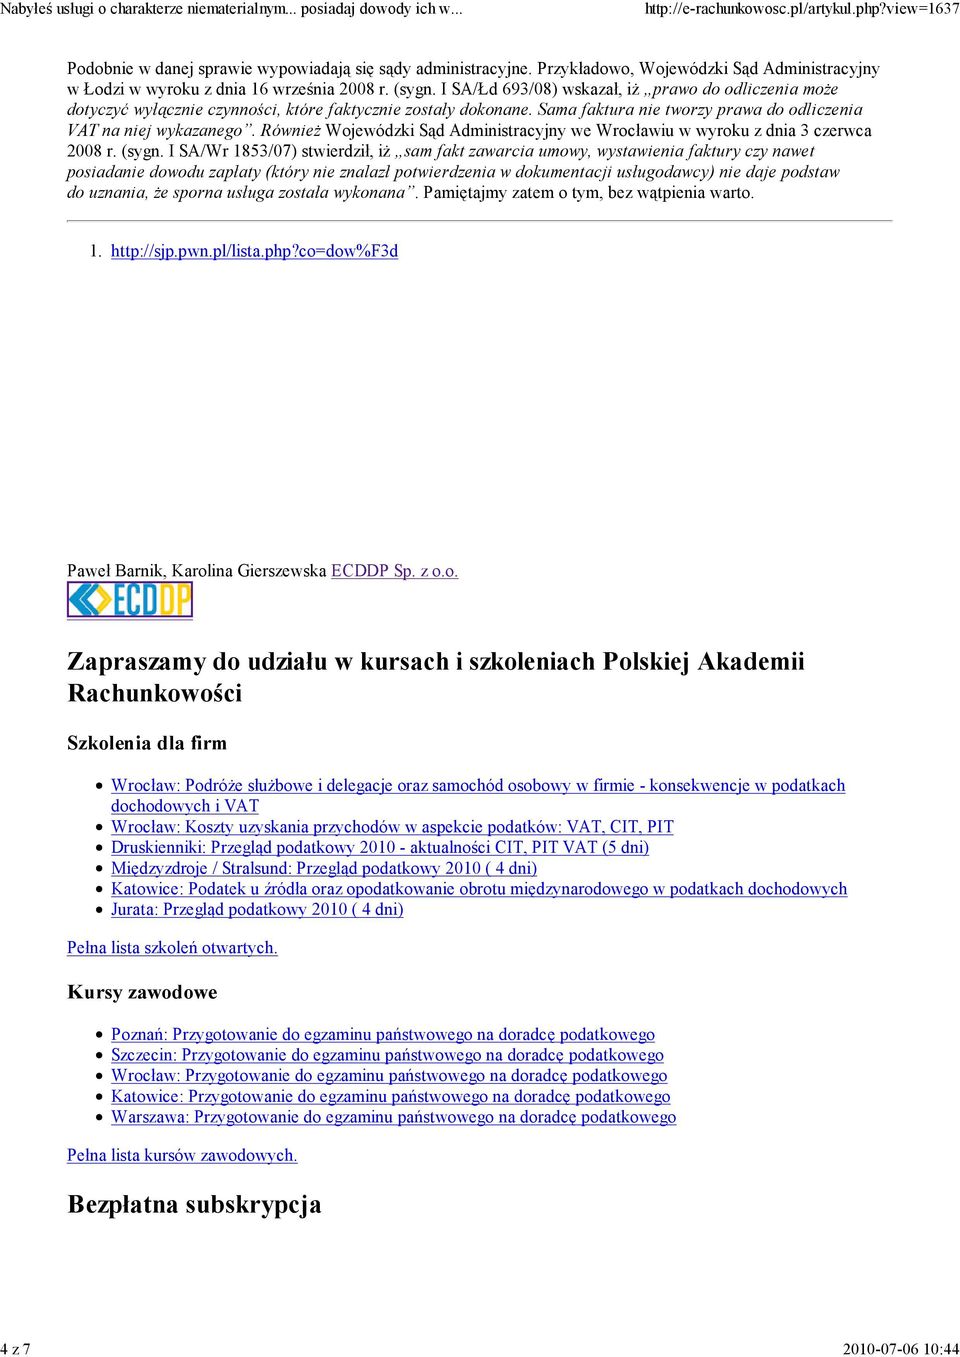 RównieŜ Wojewódzki Sąd Administracyjny we Wrocławiu w wyroku z dnia 3 czerwca 2008 r. (sygn.